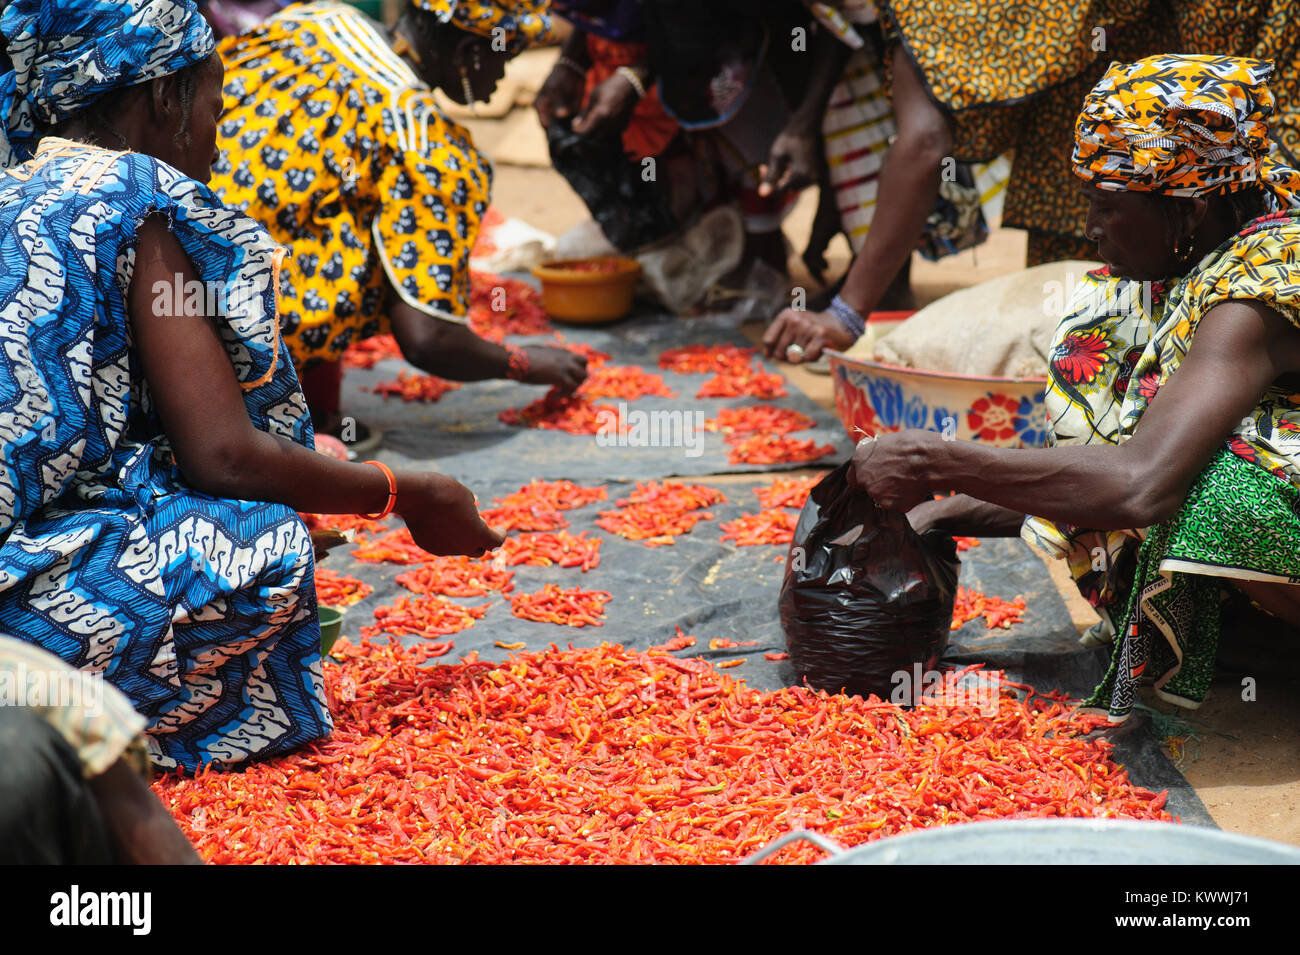 Mali, Afrika - schwarze afrikanische Menschen sammeln und vorbereiten Paprika für den Verkauf auf dem Markt morgen öffnen Stockfoto